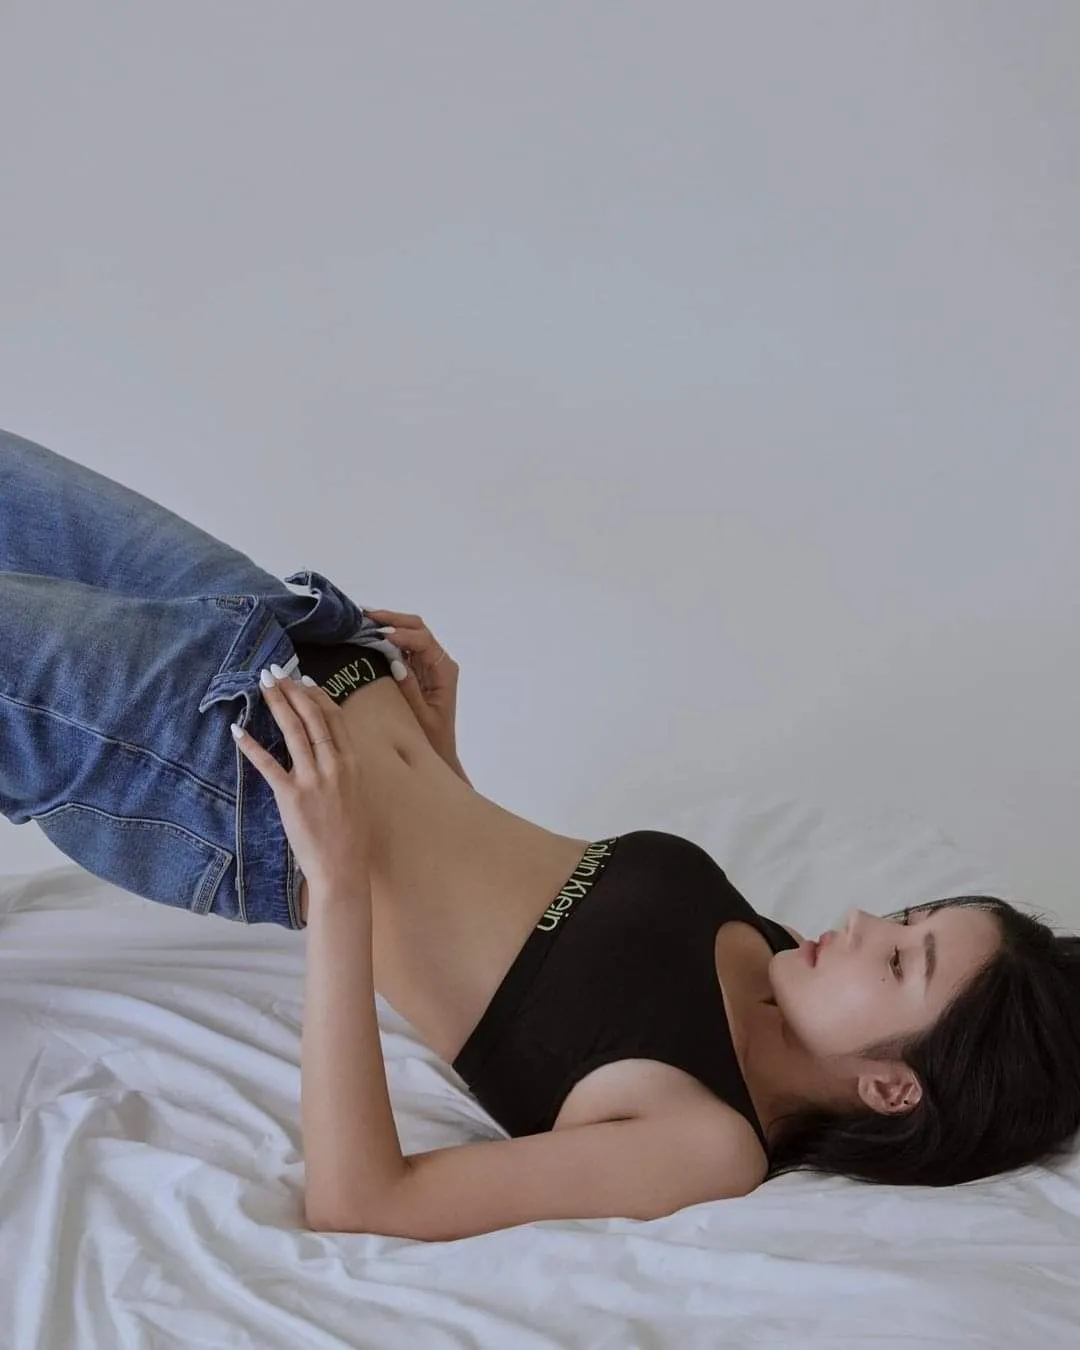 Kwon Eunbi hace alarde de figura de línea S y belleza natural en la última sesión de fotos de Calvin Klein